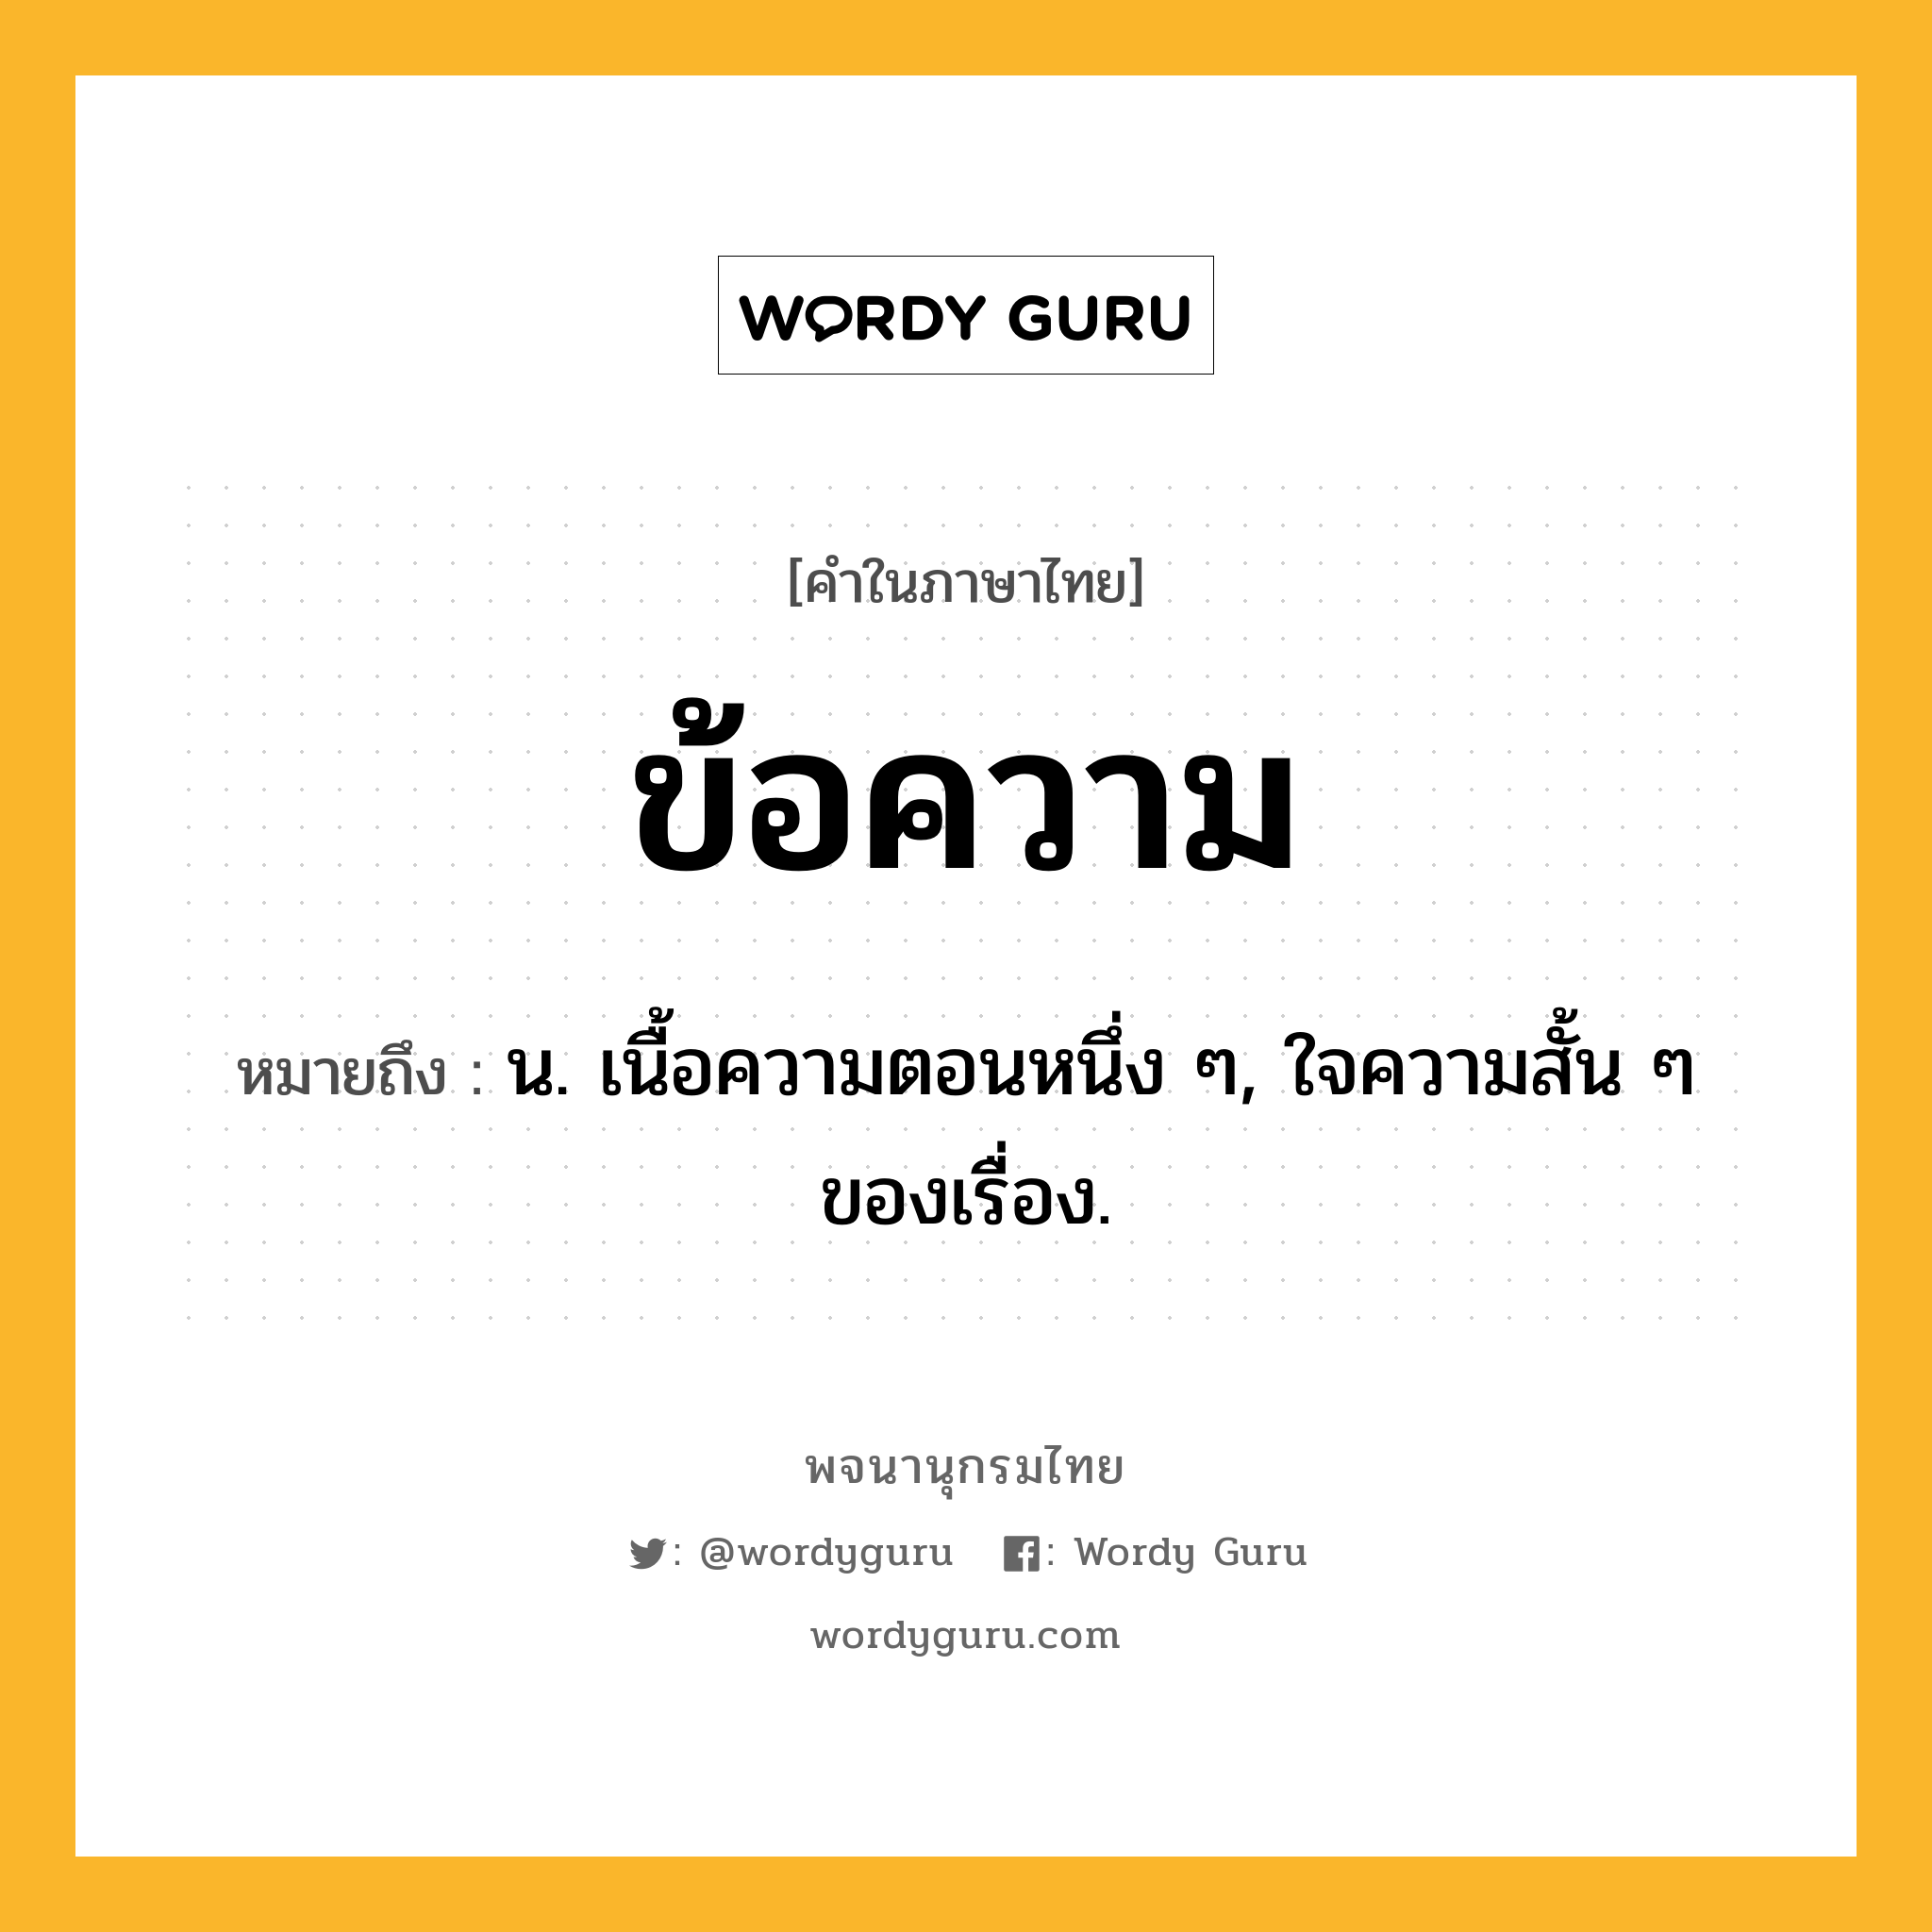 ข้อความ หมายถึงอะไร?, คำในภาษาไทย ข้อความ หมายถึง น. เนื้อความตอนหนึ่ง ๆ, ใจความสั้น ๆ ของเรื่อง.